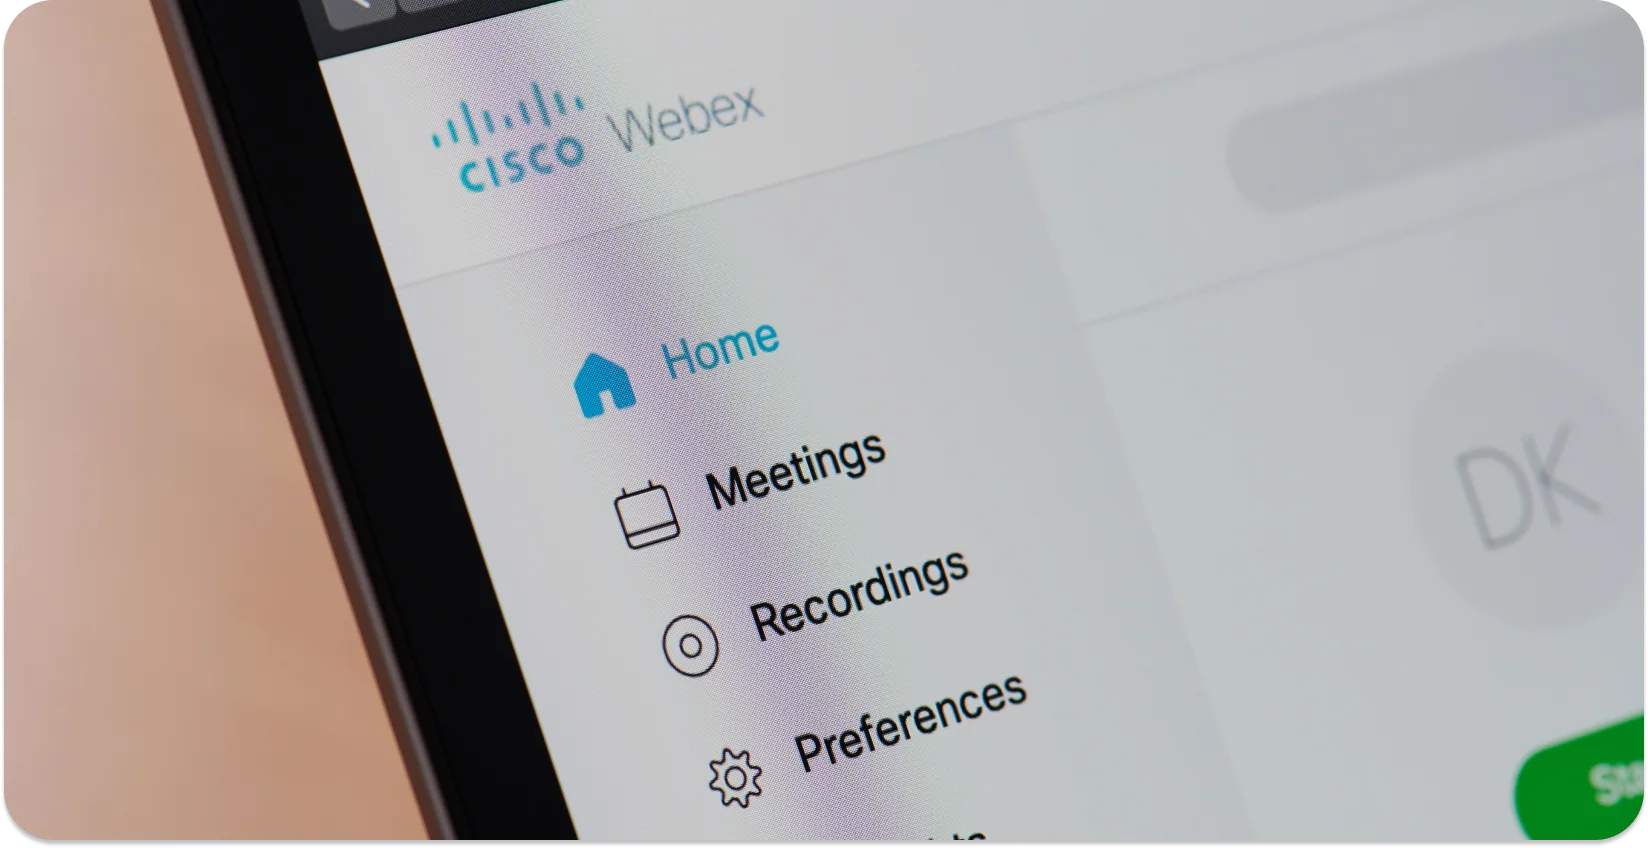 स्मार्टफोन स्क्रीन पर प्रदर्शित मीटिंग विकल्पों Webex रिकॉर्ड करें।